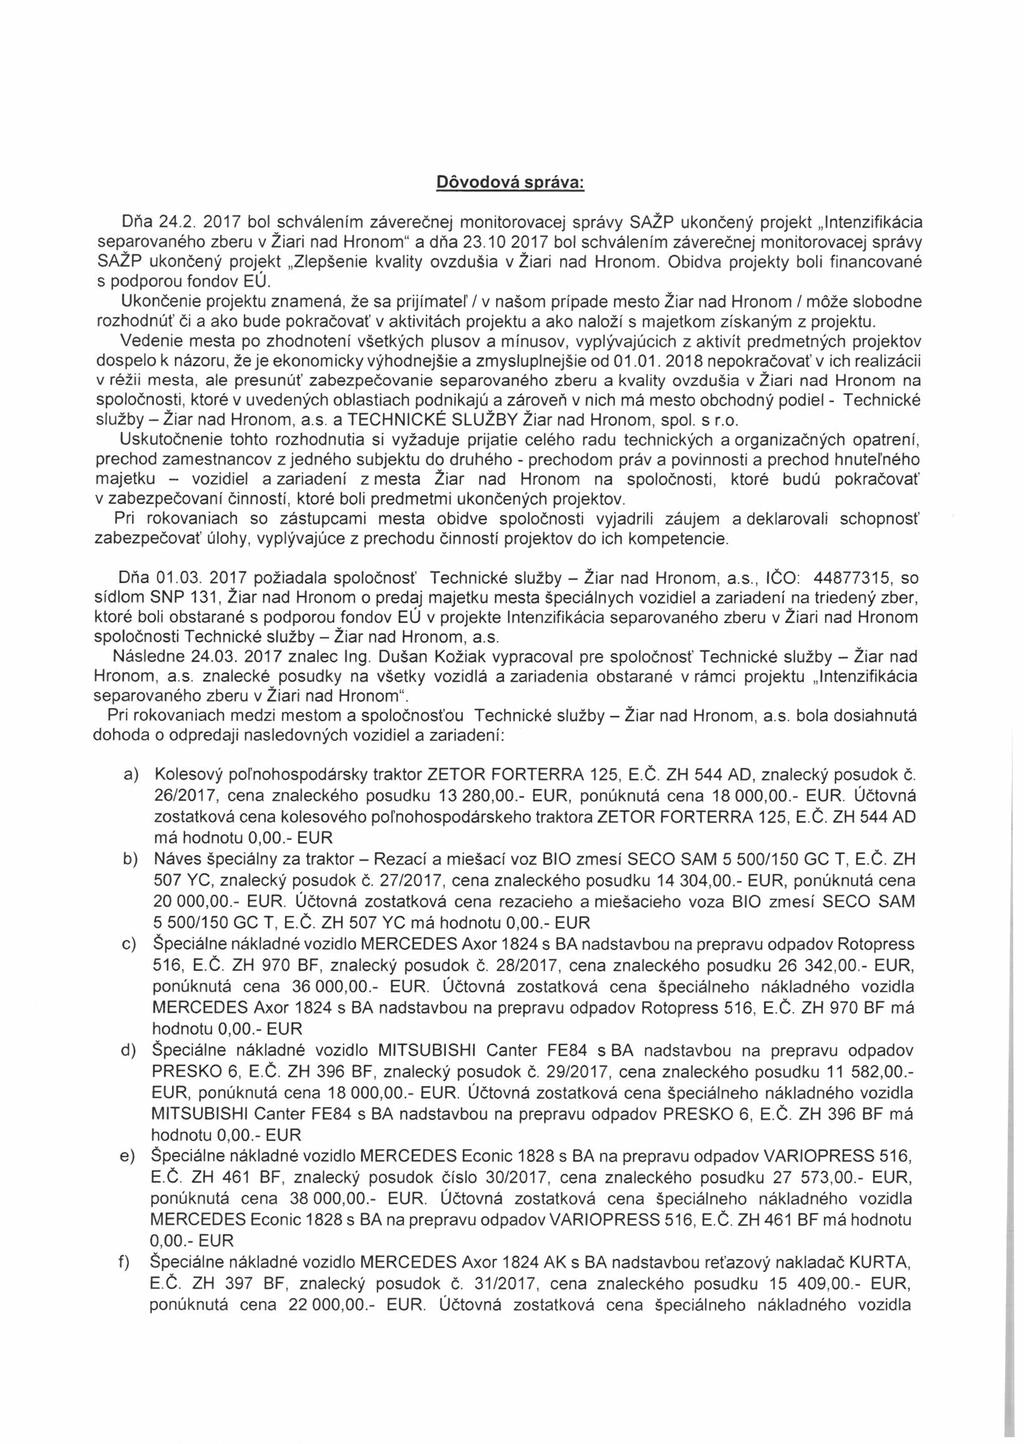 Dôvodová správa: Dňa 24.2. 2017 bo! schválením záverečnej monitorovacej správy SAŽP ukončený projekt Intenzifikácia separovaného zberu v Žiari nad Hronom" a dňa 23.